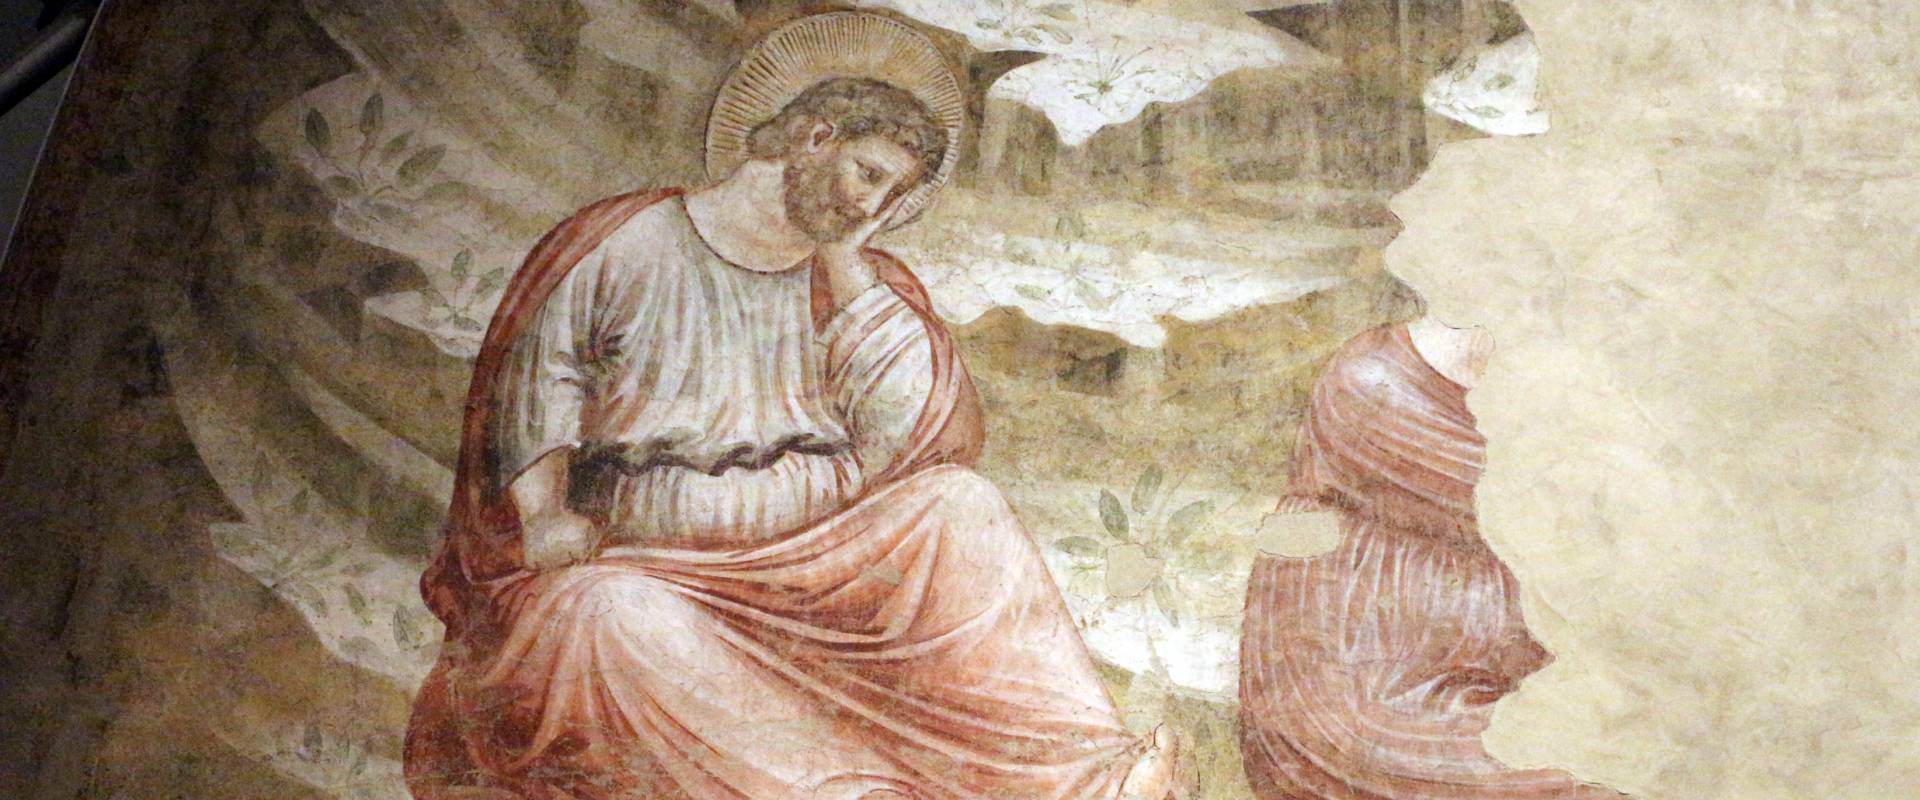 Pietro da rimini e bottega, affreschi dalla chiesa di s. chiara a ravenna, 1310-20 ca., natività e annuncio ai pastori 03 foto di Sailko